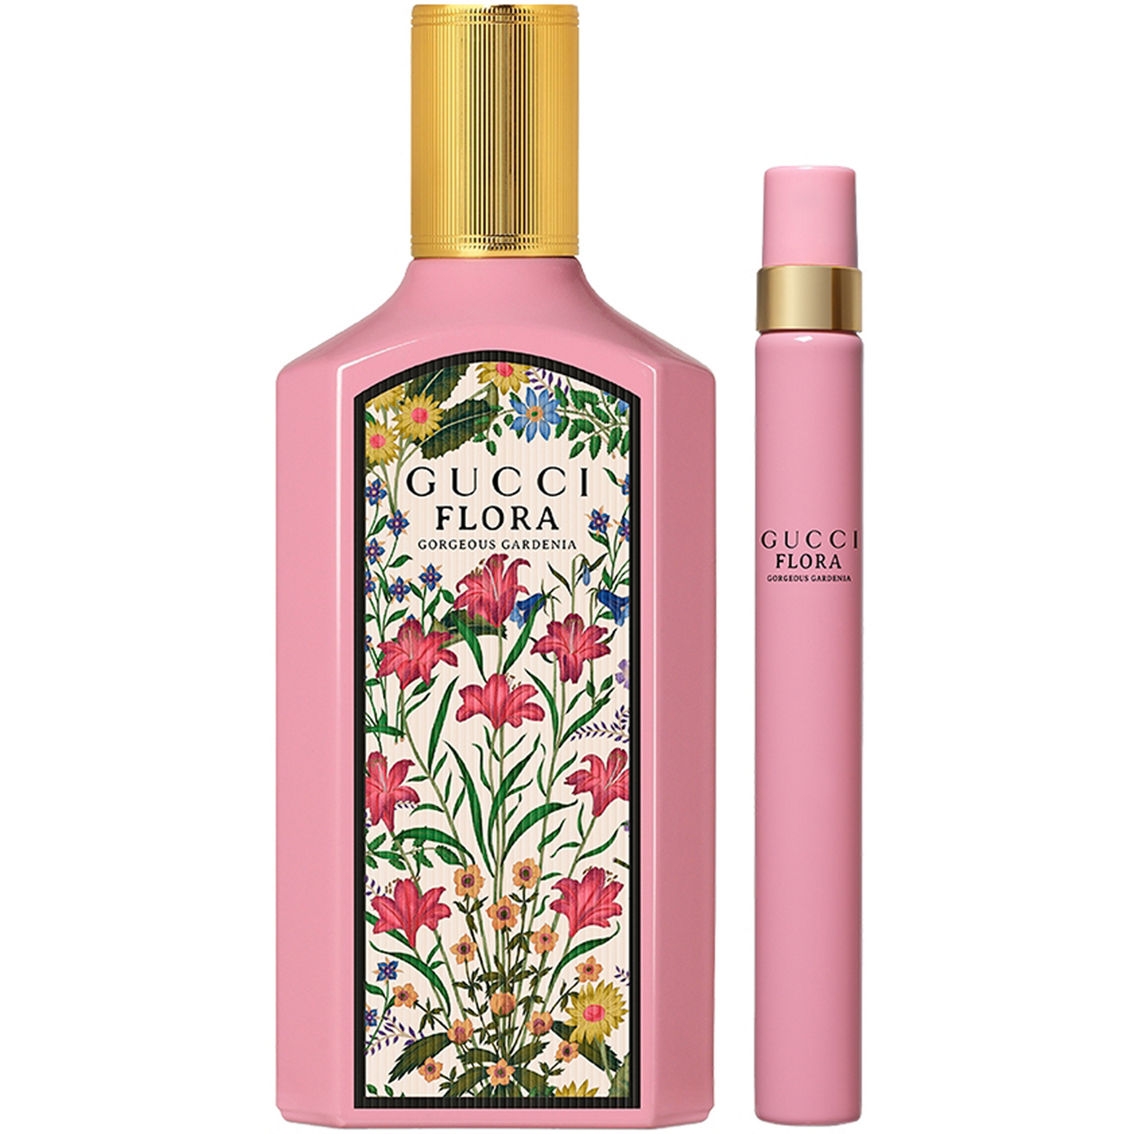 Gucci Flora Gorgeous Gardenia Eau de Parfum 2 pc. Gift Set - Image 2 of 2